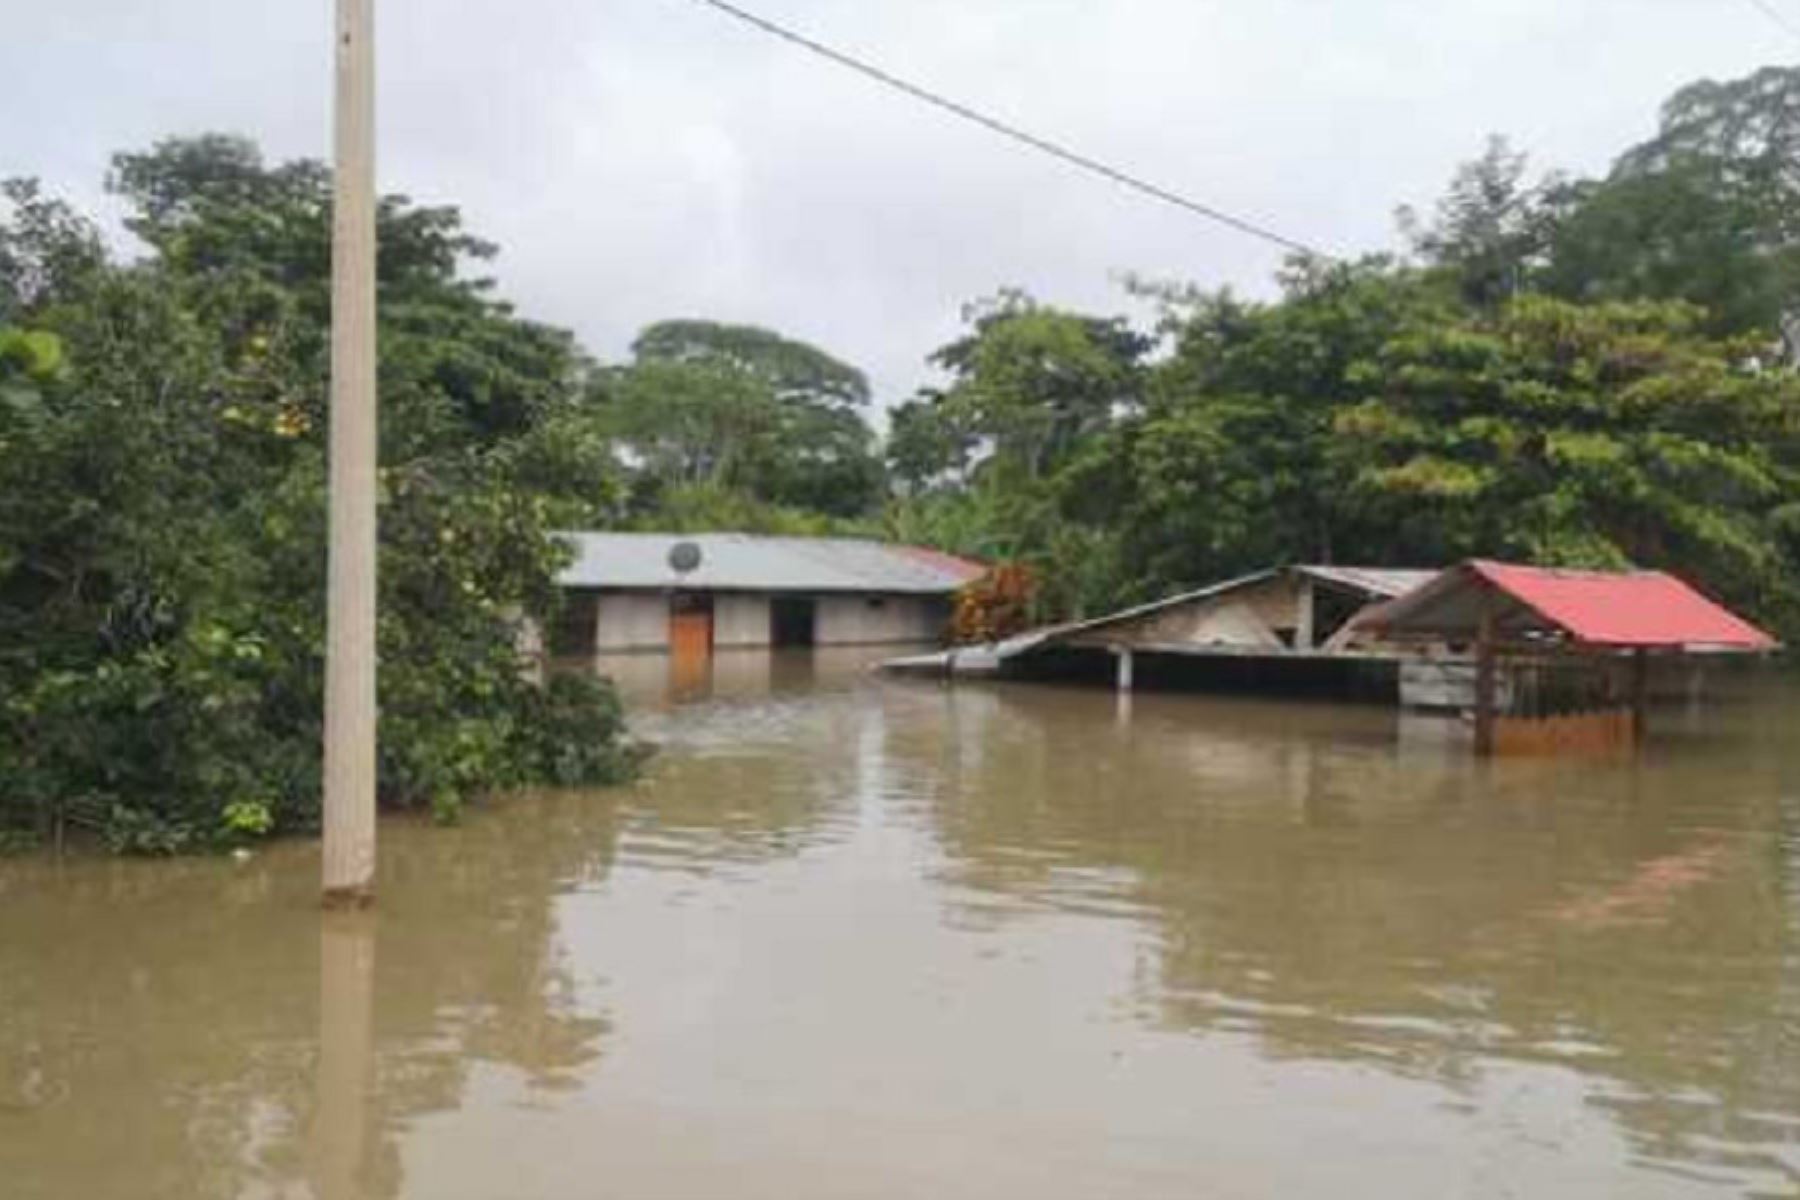 El Gobierno Regional de Madre de Dios, a través de la Dirección Regional de Vivienda, Construcción y Saneamiento, informó que 1,380 viviendas fueron inundadas por el desborde de los ríos, en nueve de los once distritos de dicho departamento amazónico.